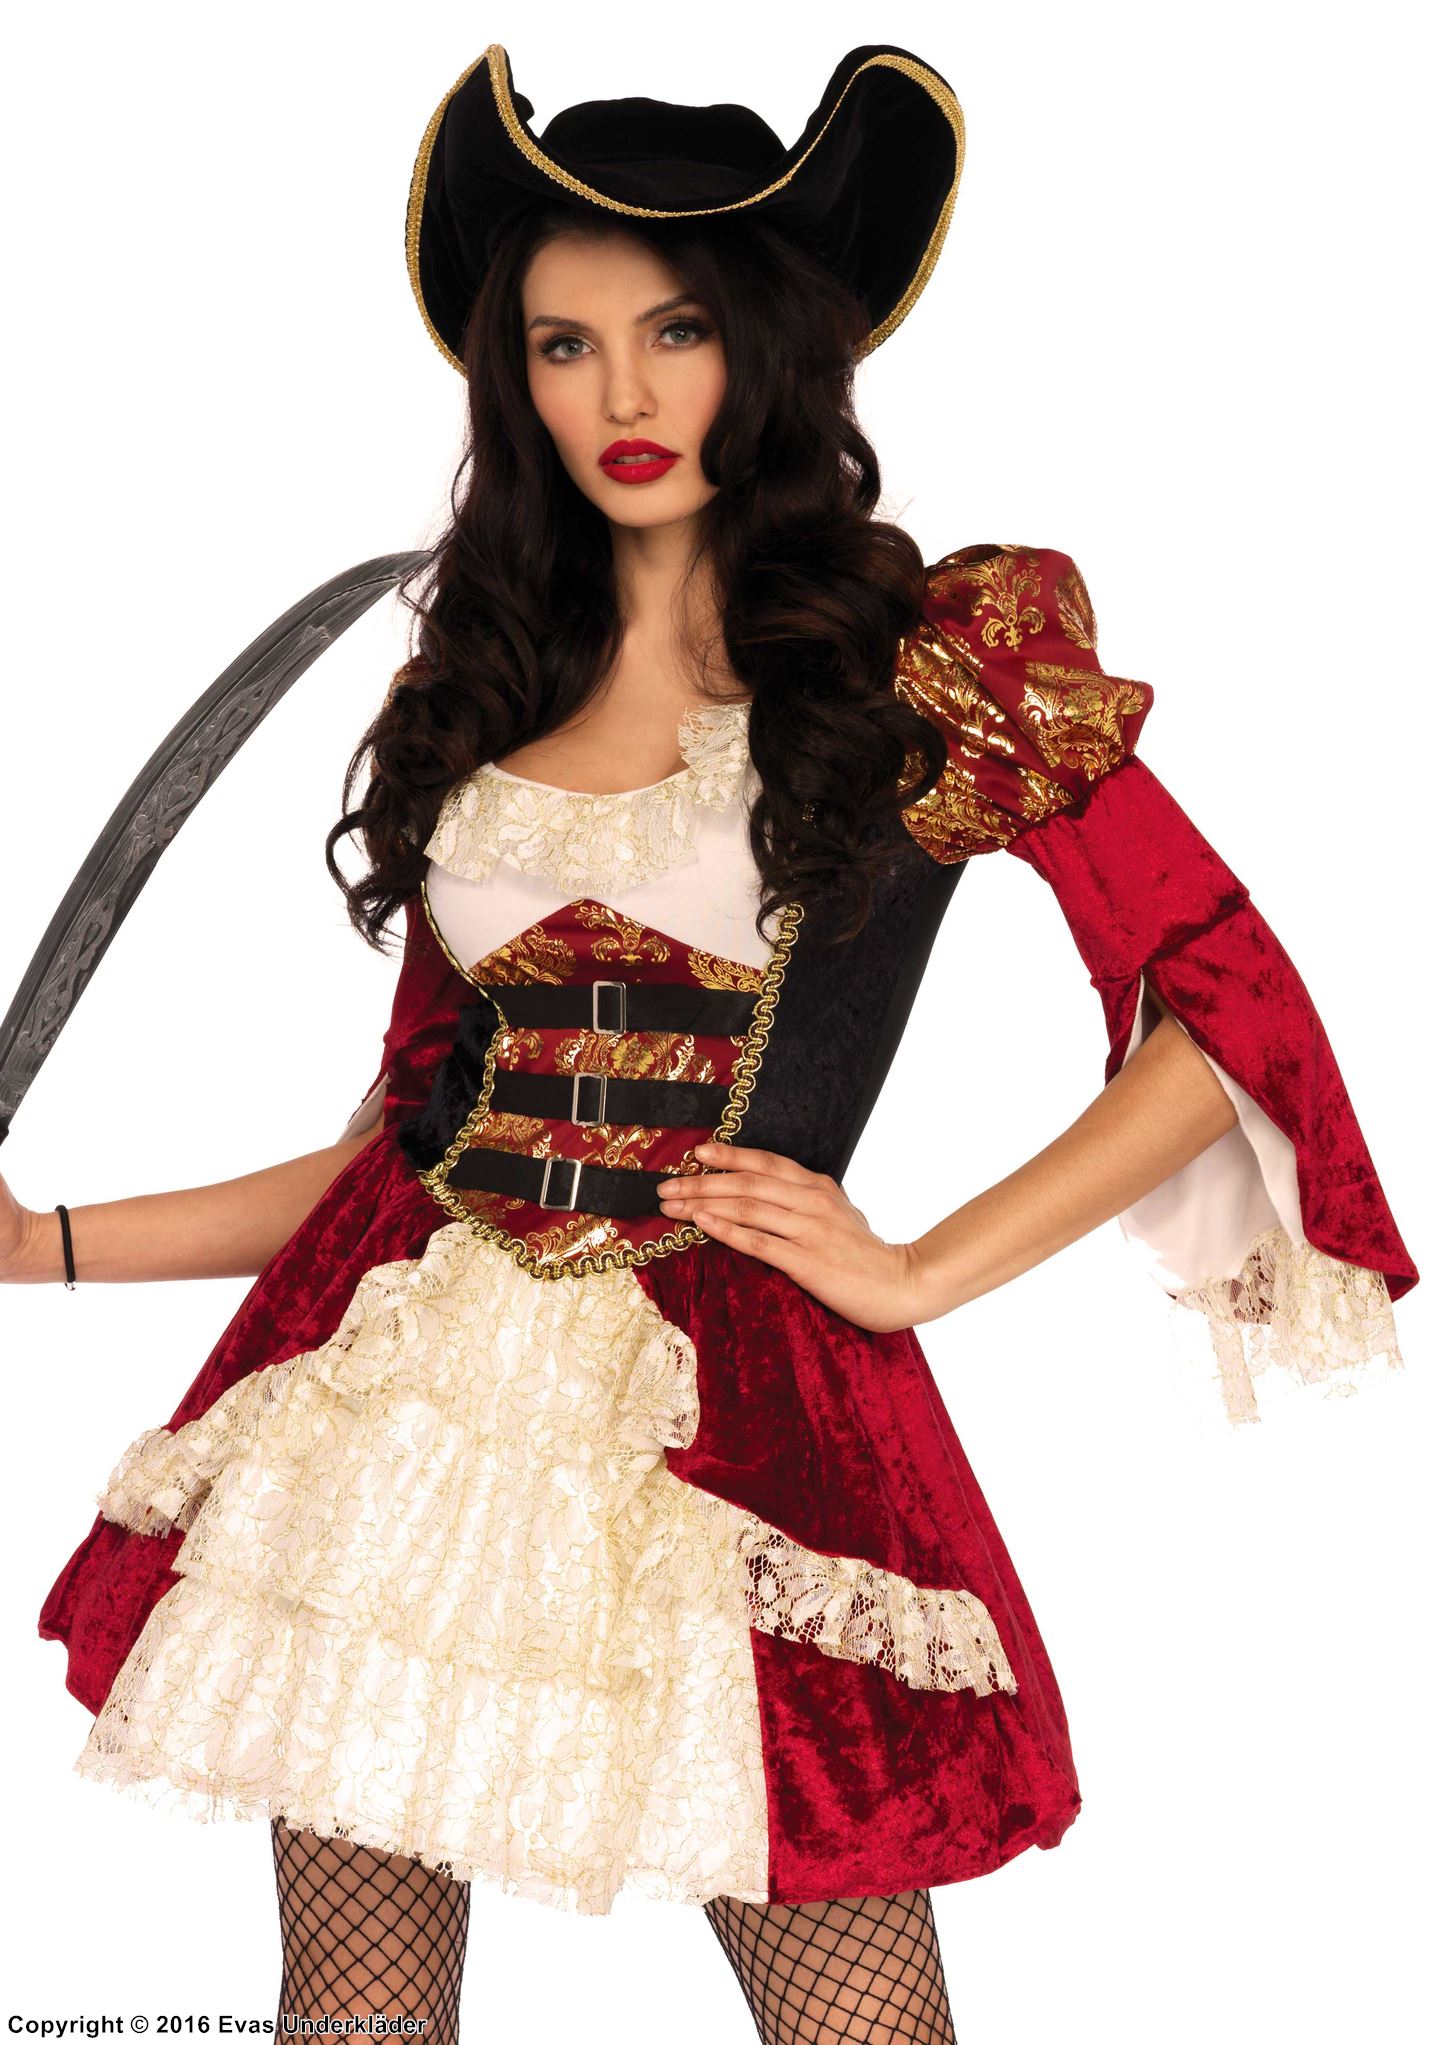 Female musketeer, costume dress, lace trim, ruffles, buckle, velvet